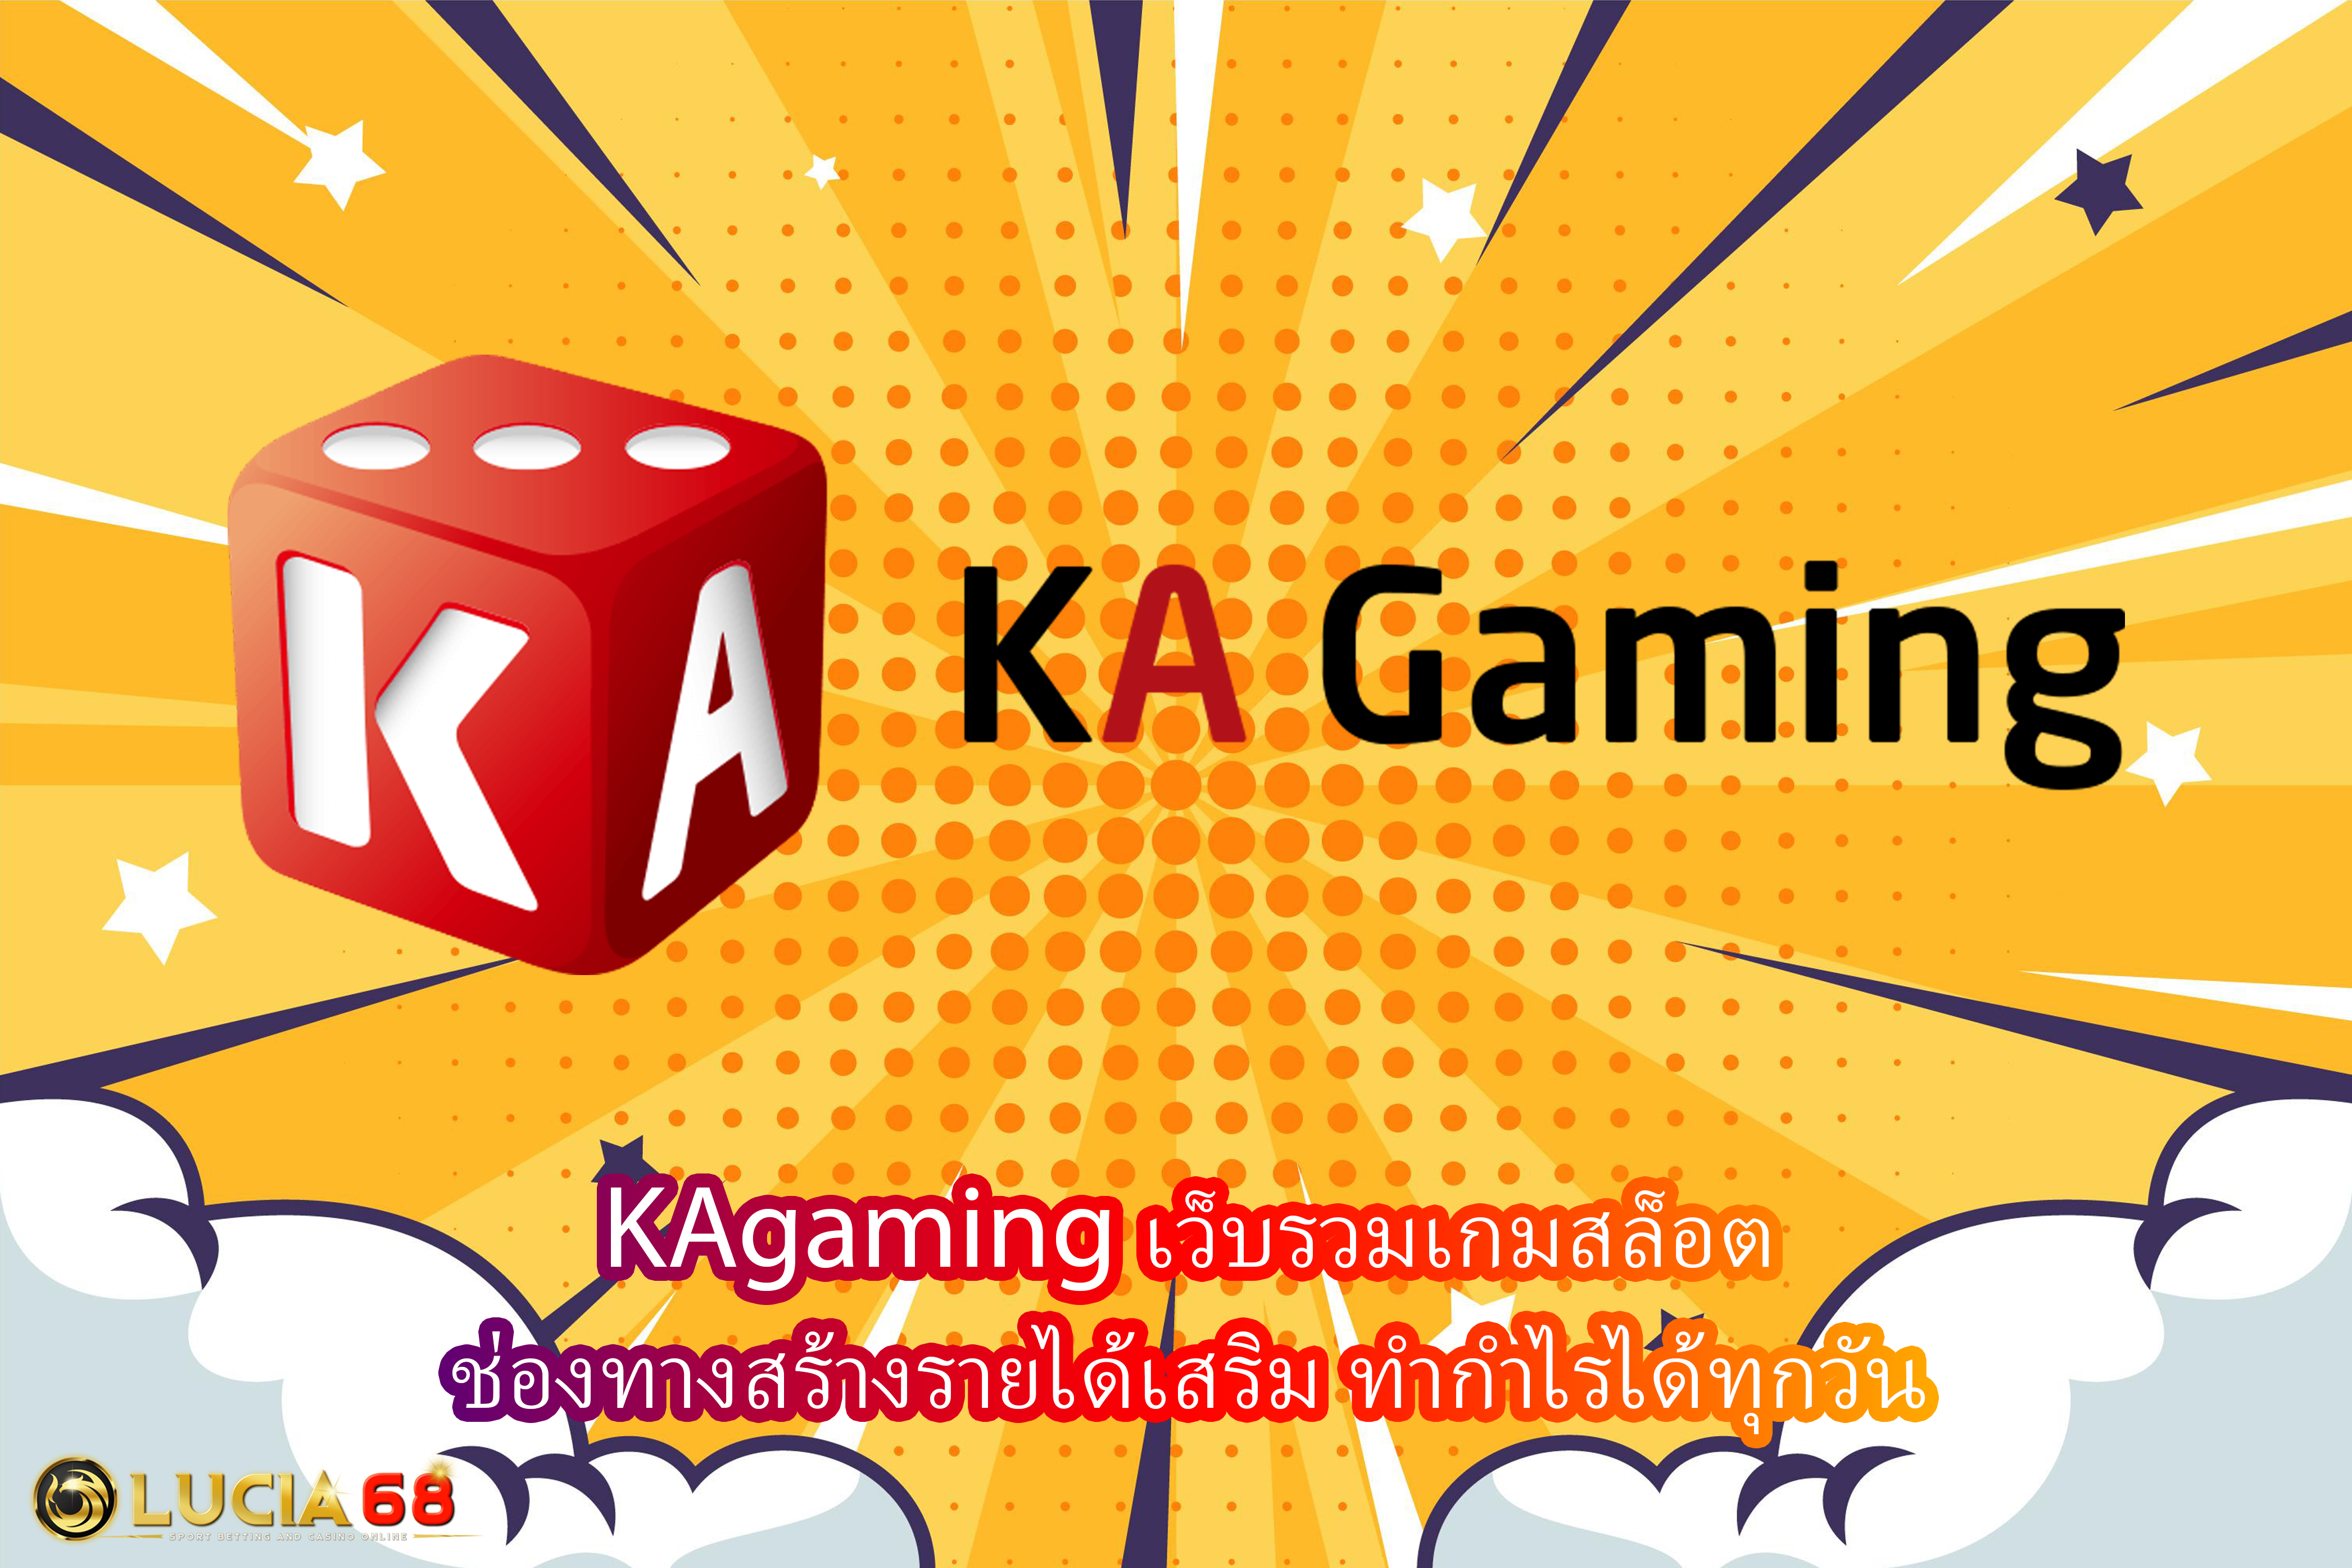 KAgaming เว็บรวมเกมสล็อต ช่องทางสร้างรายได้เสริม ทำกำไรได้ทุกวัน